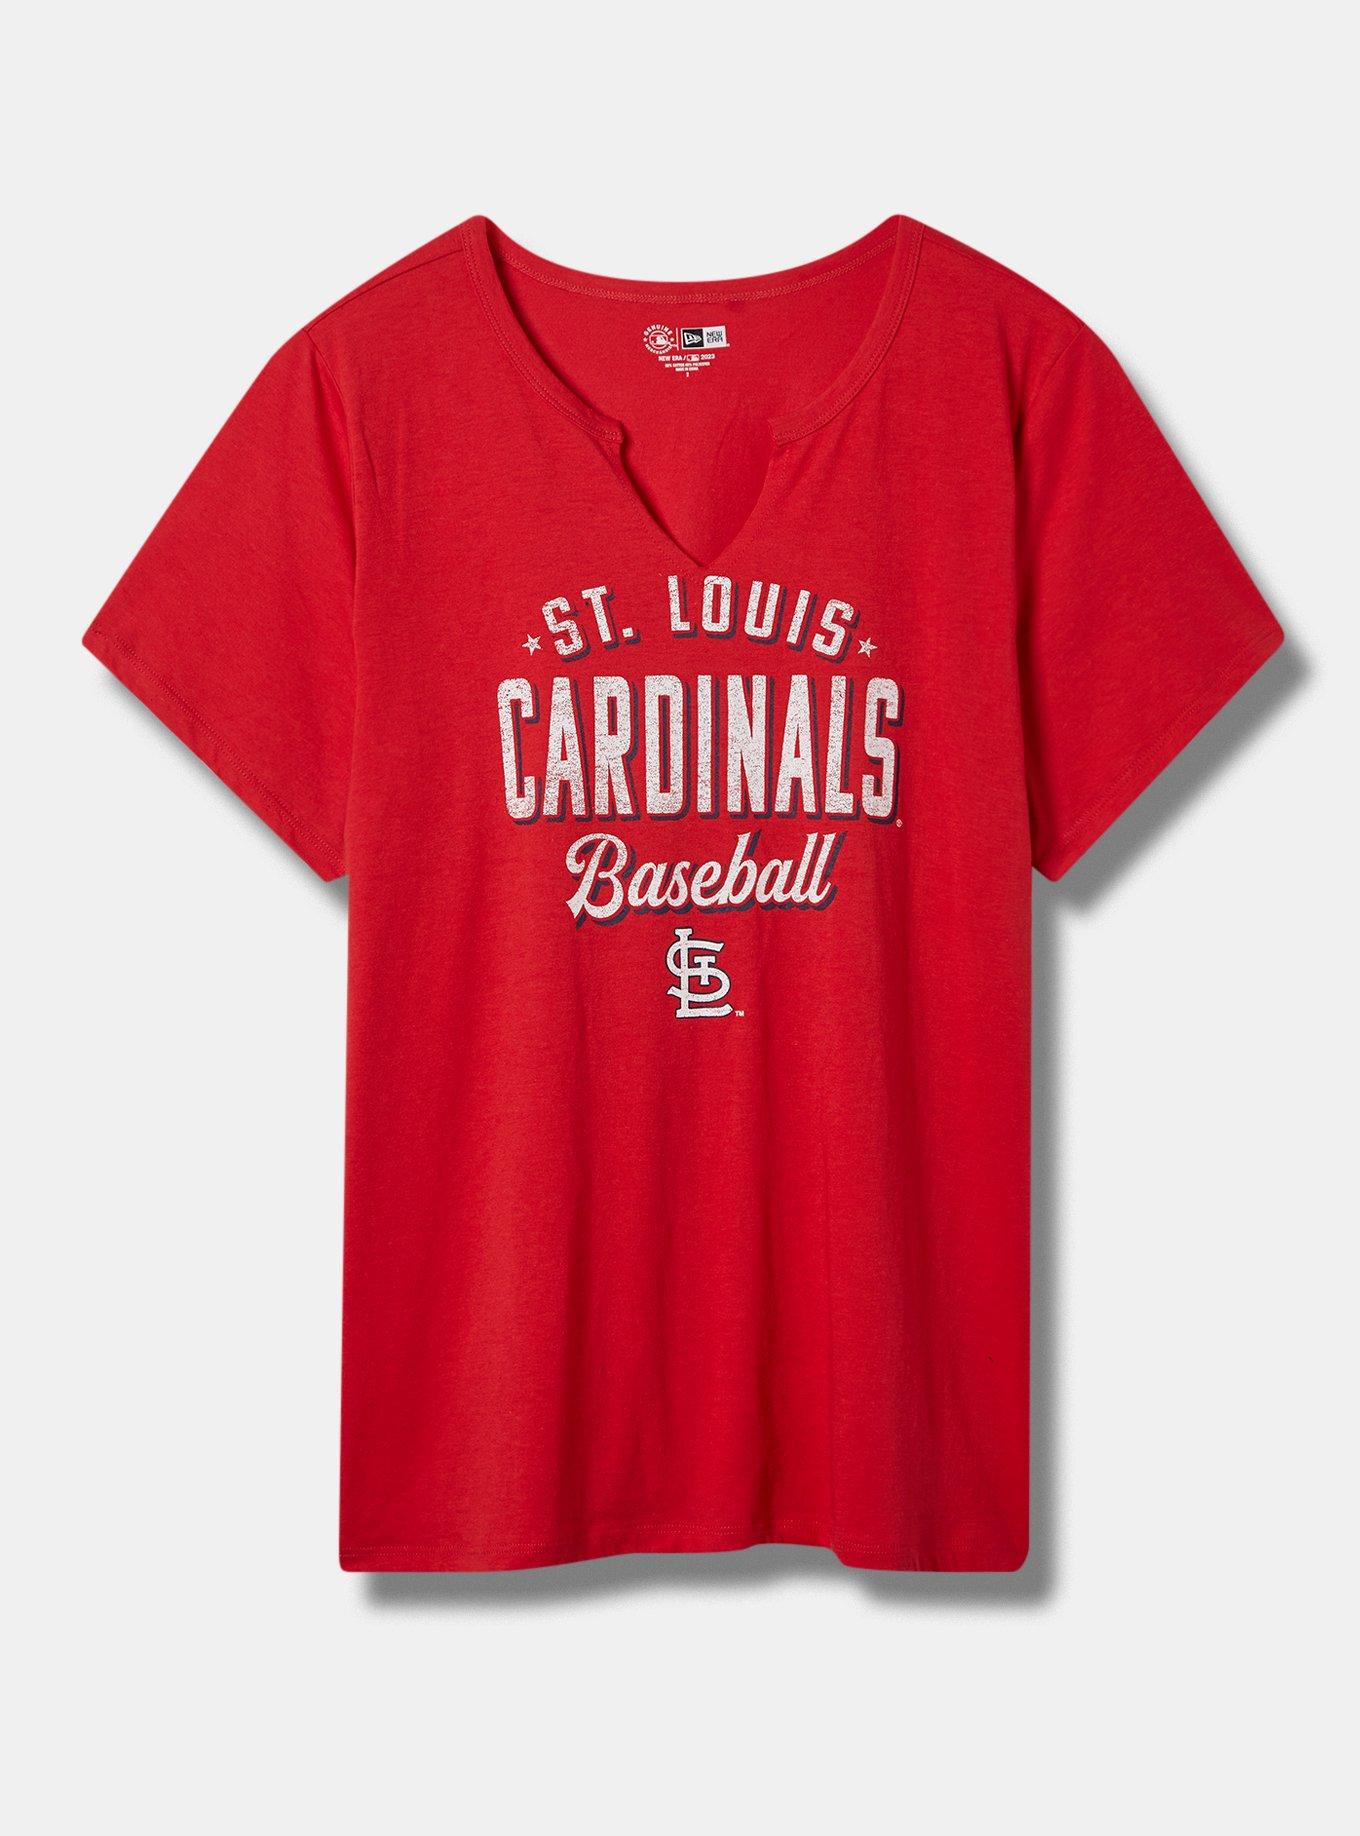 St. Louis Cardinals Plus Sizes T-Shirts, Cardinals Tees, Shirts